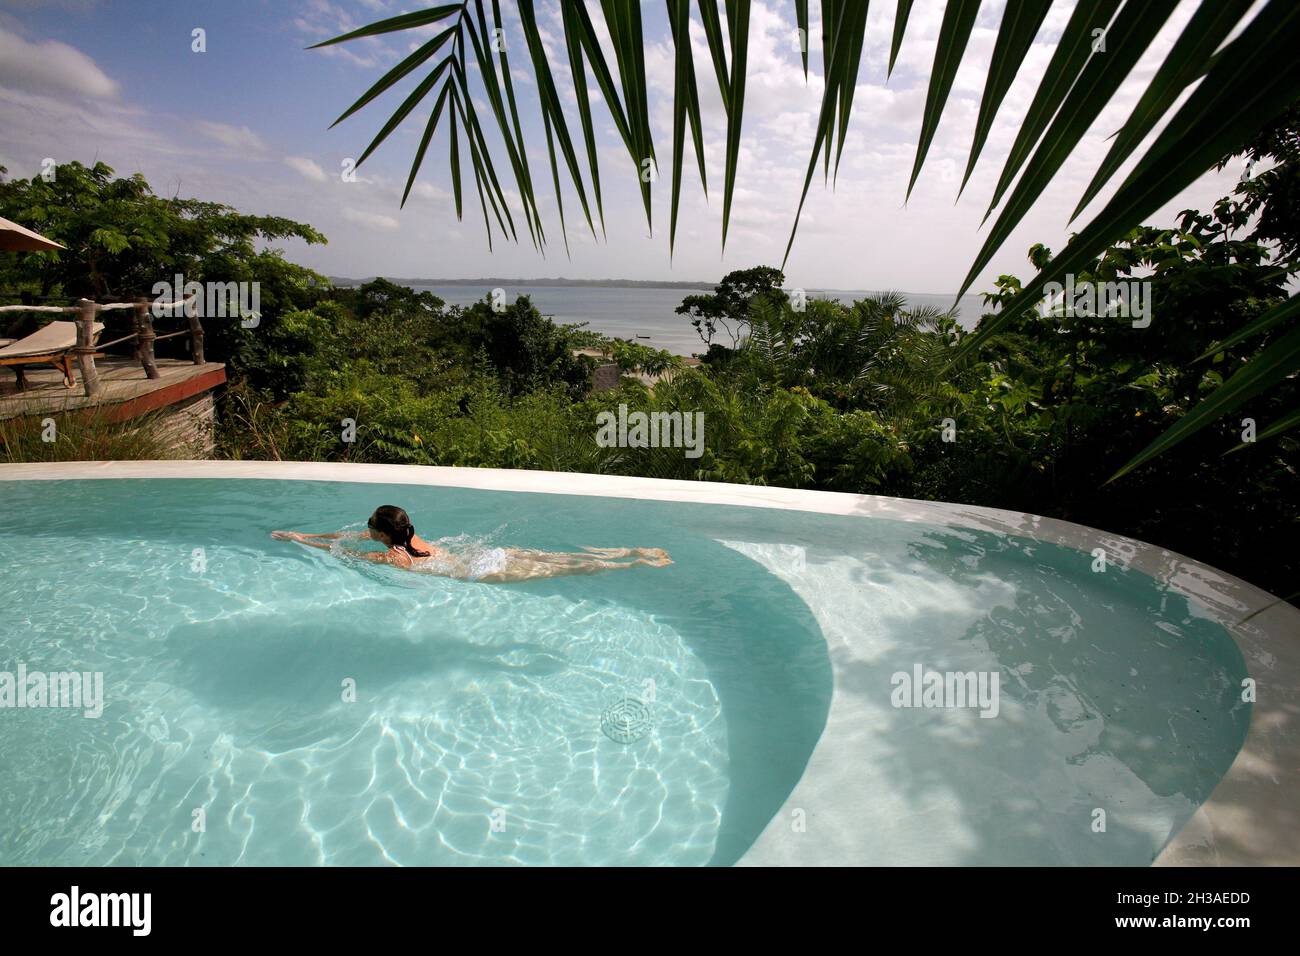 TANZANIA, ZANZIBAR ARCHIPELAGO, PEMBA ISLAND. FUNDOO LAGOON HOTEL Stock Photo